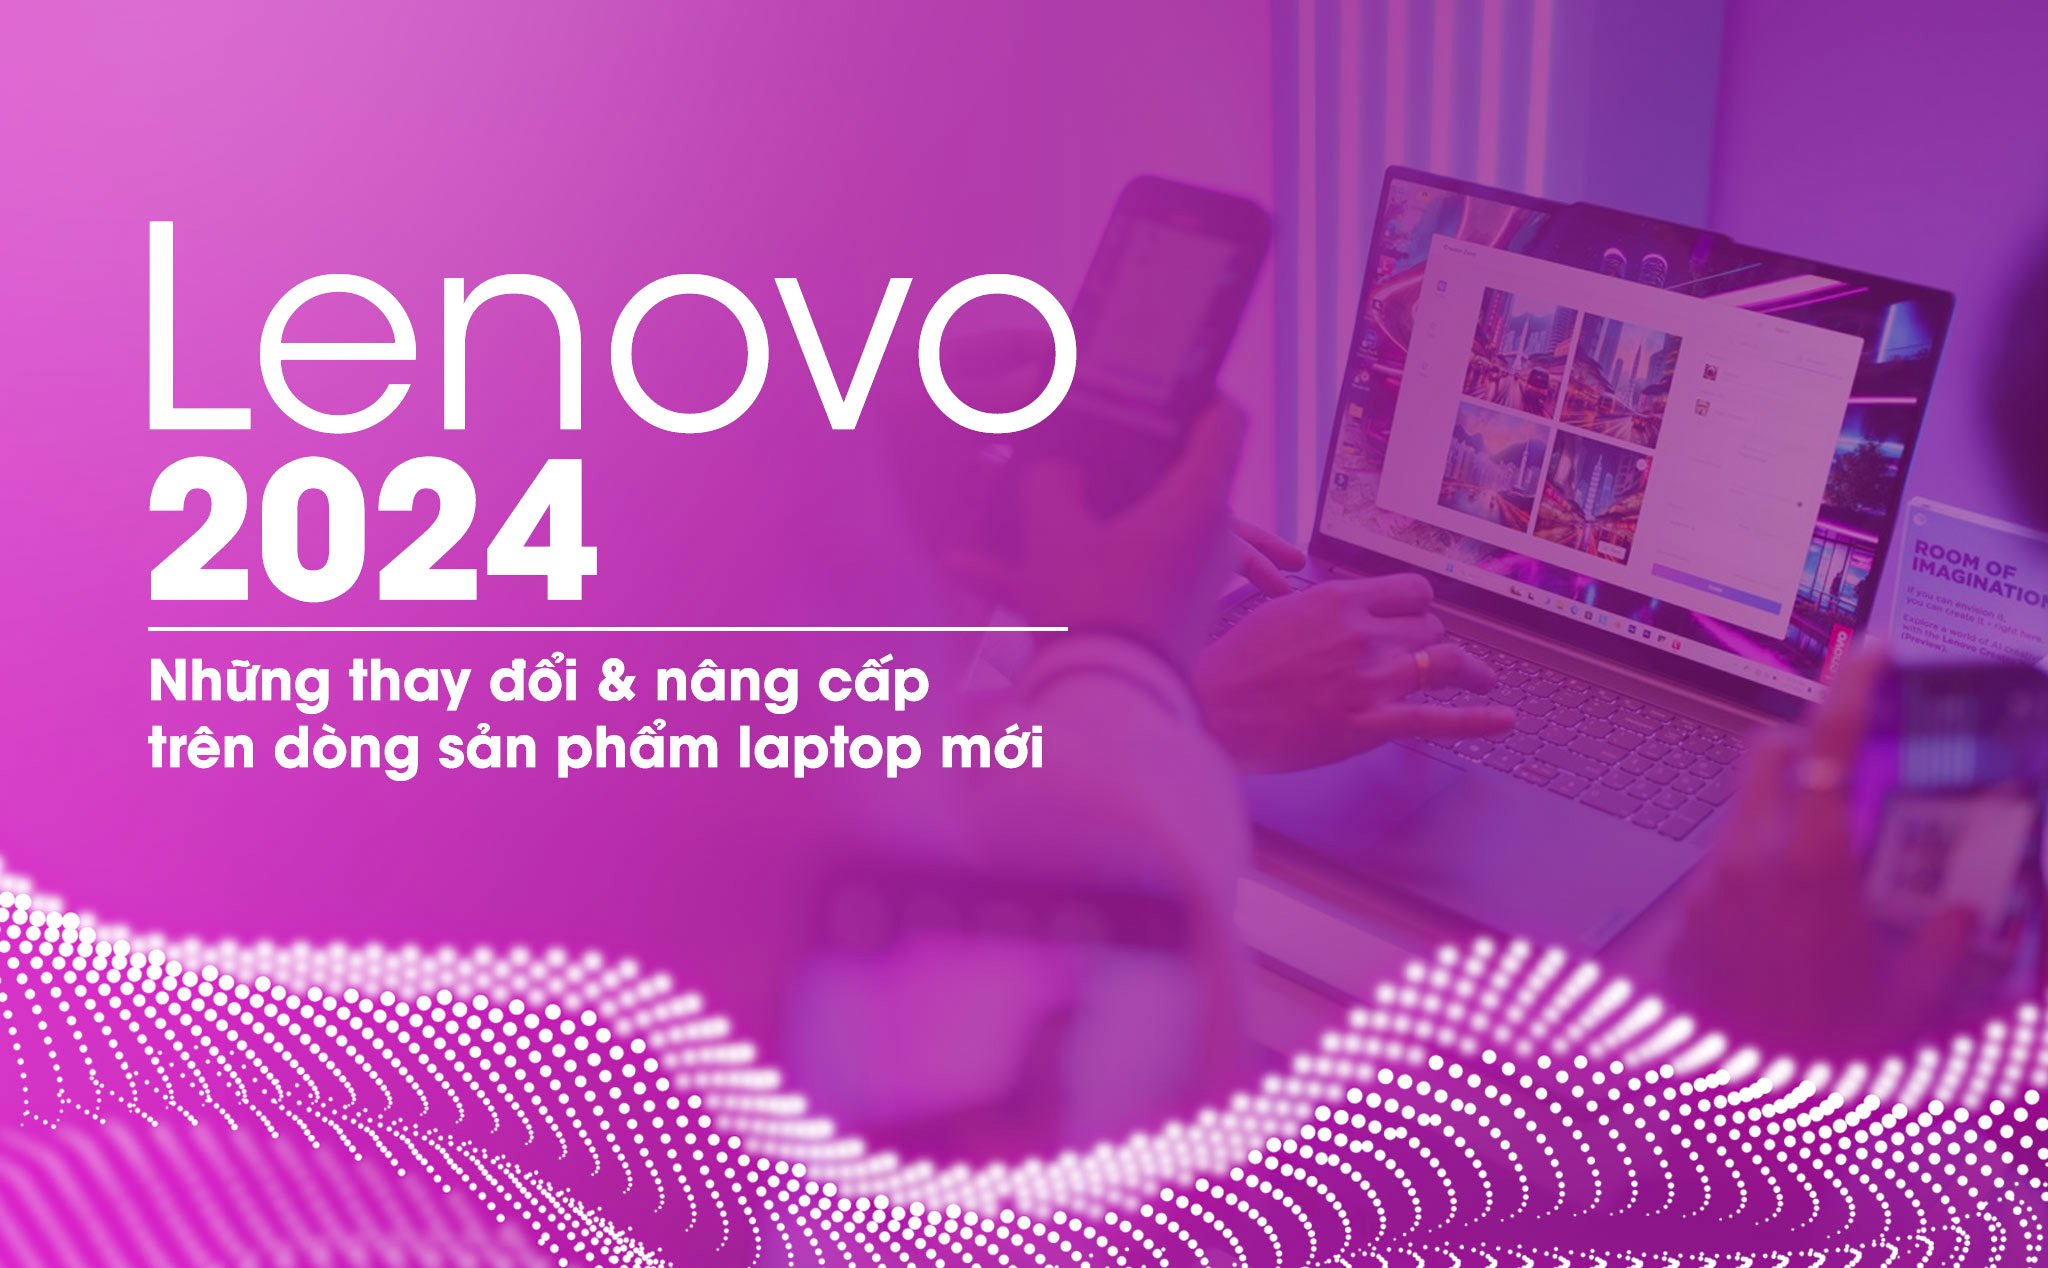 Những thay đổi và nâng cấp trên dòng sản phẩm laptop mới của Lenovo trong năm 2024